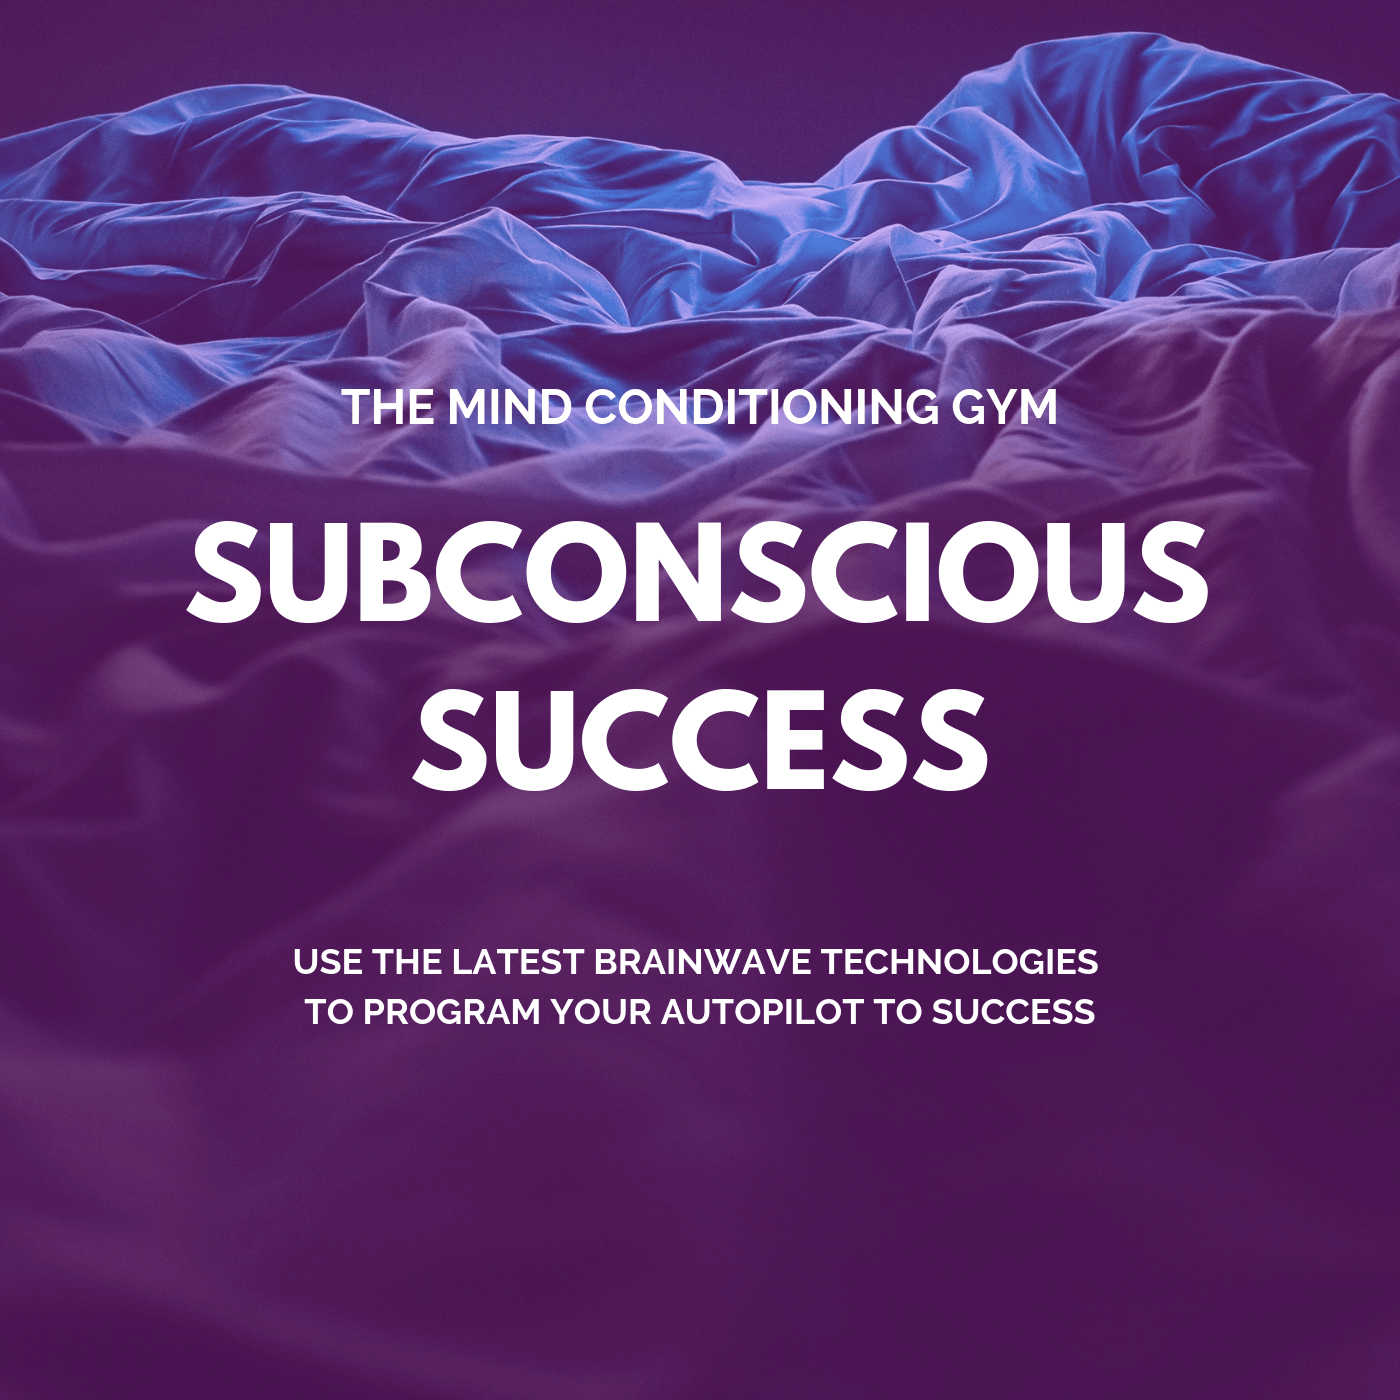 Subconscious success program